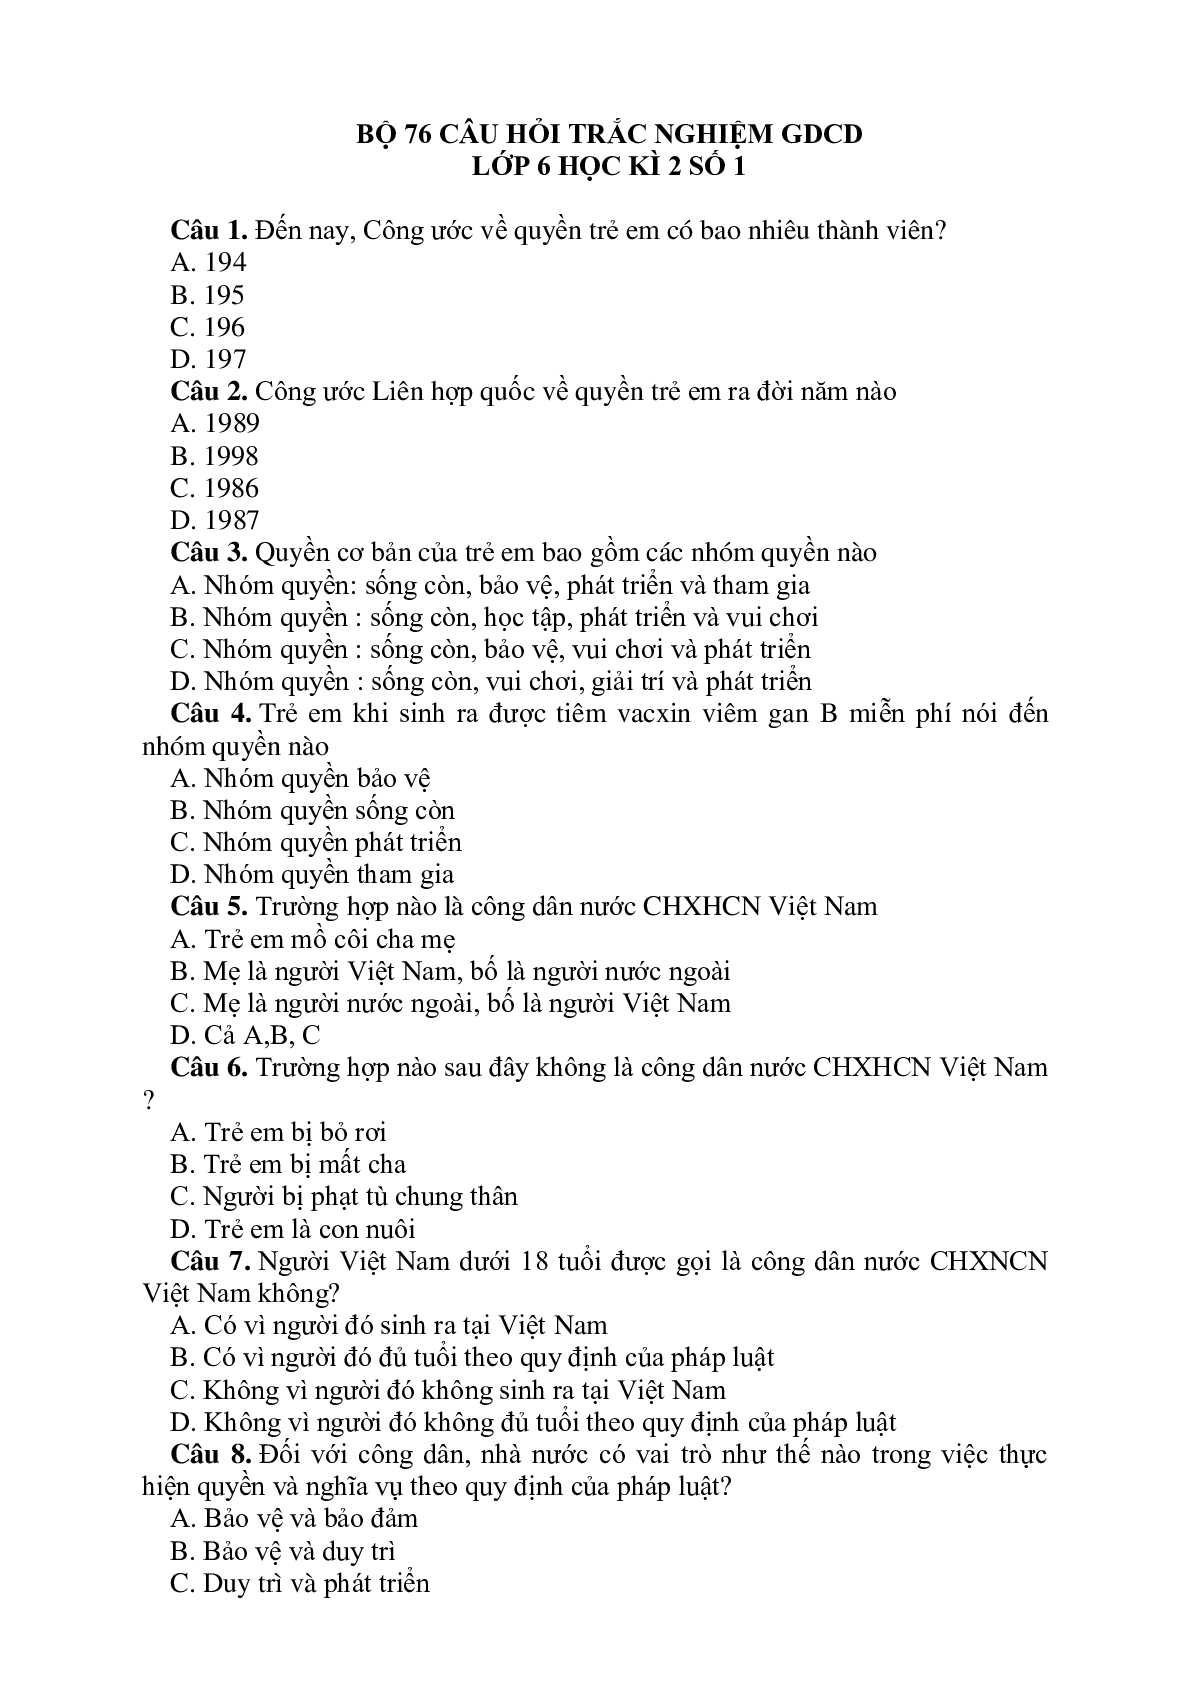 76 câu hỏi trắc nghiệm GDCD lớp 6 có đáp án, chọn lọc (trang 1)